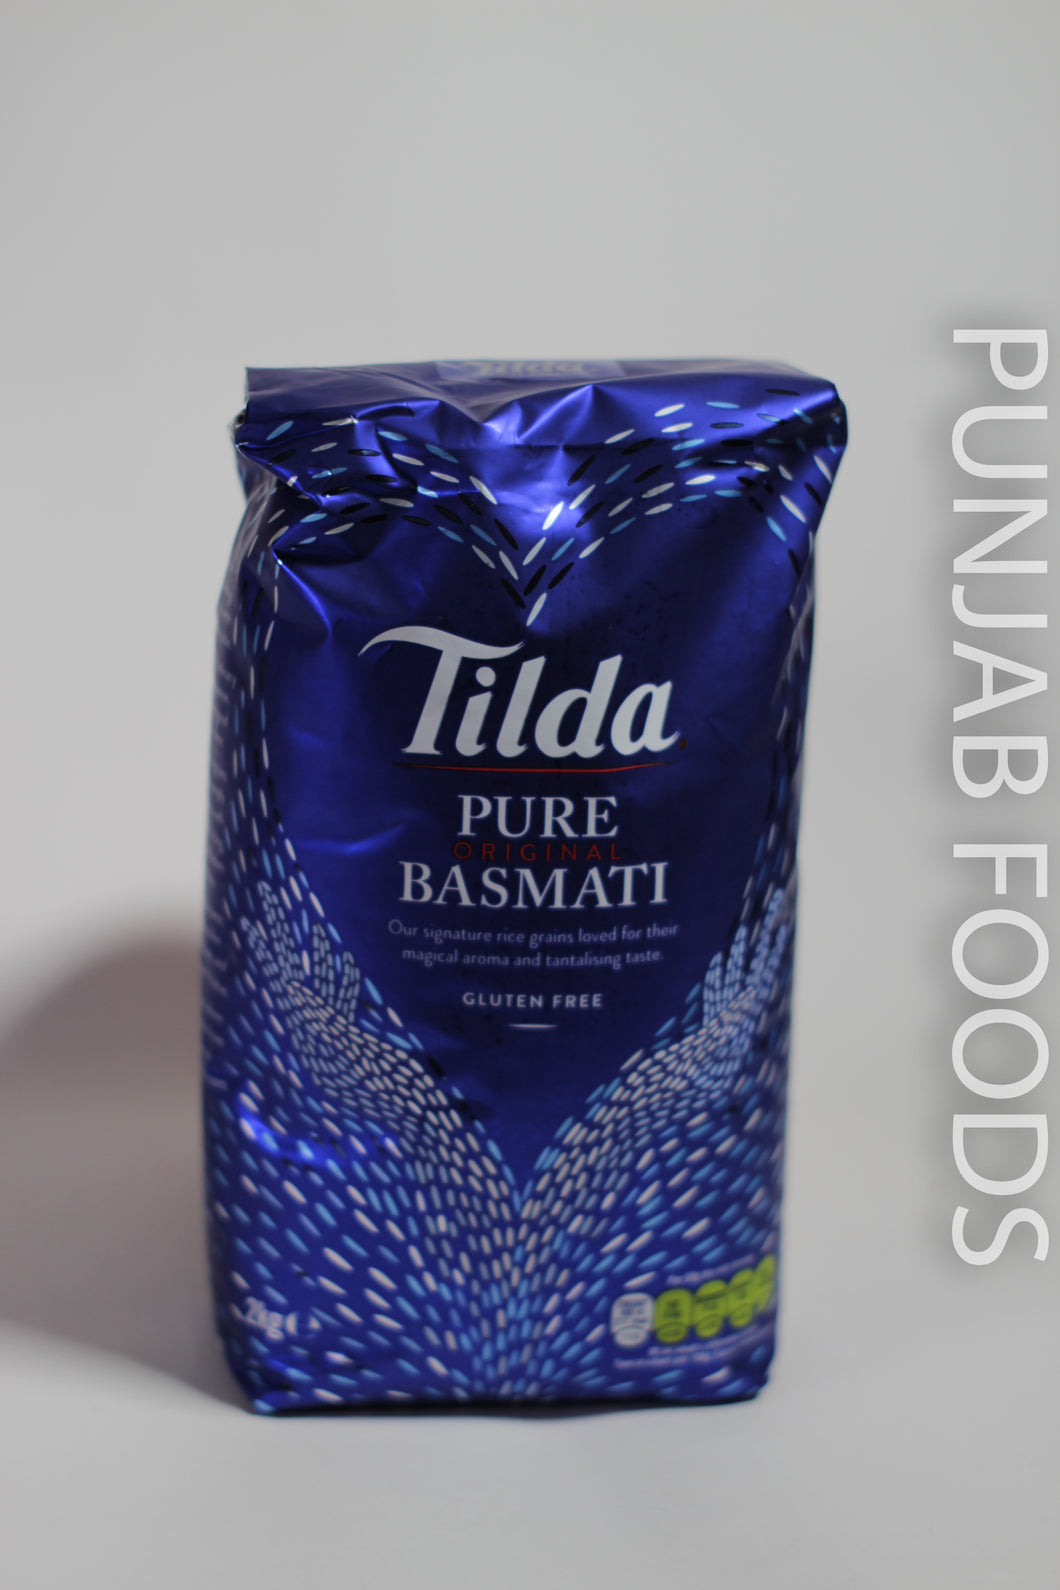 Tilda Pure Basmati 2KG